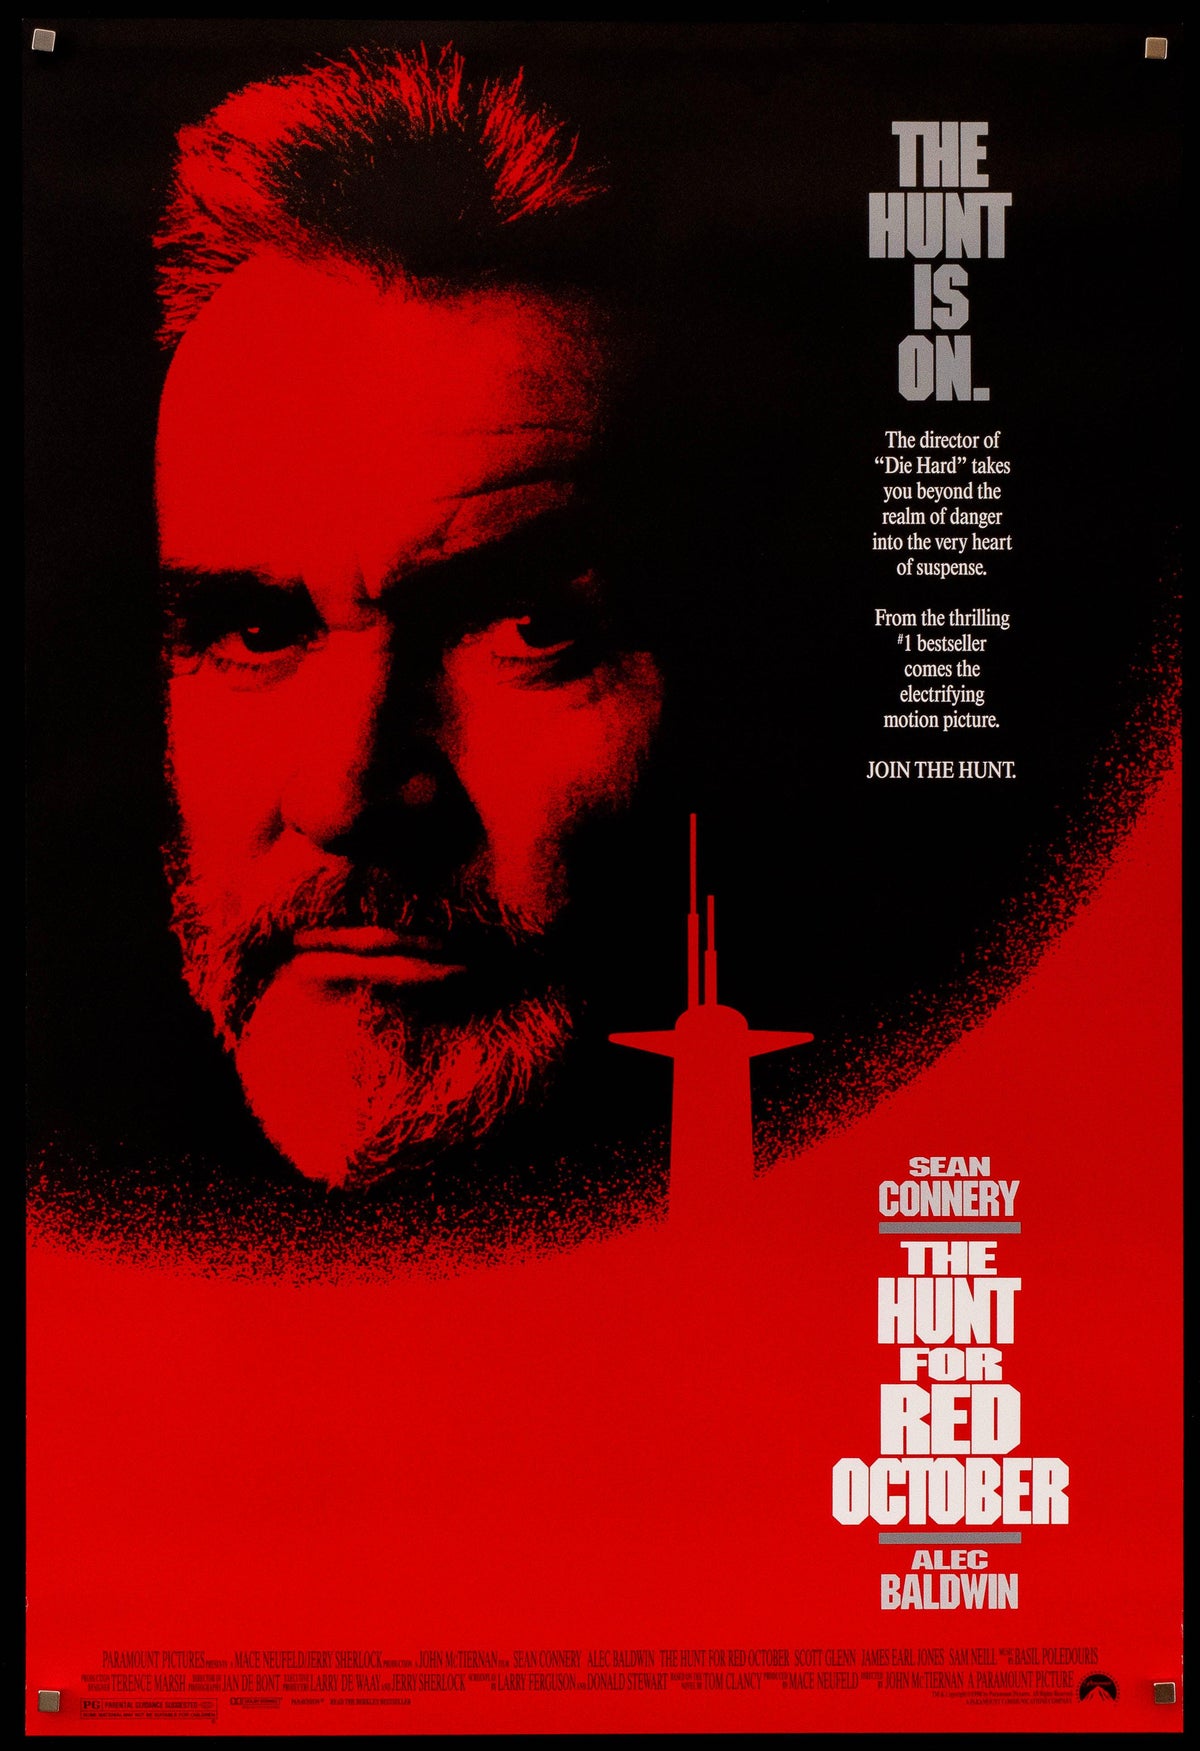 The Hunt for Red October 1 Sheet (27x41) Original Vintage Movie Poster